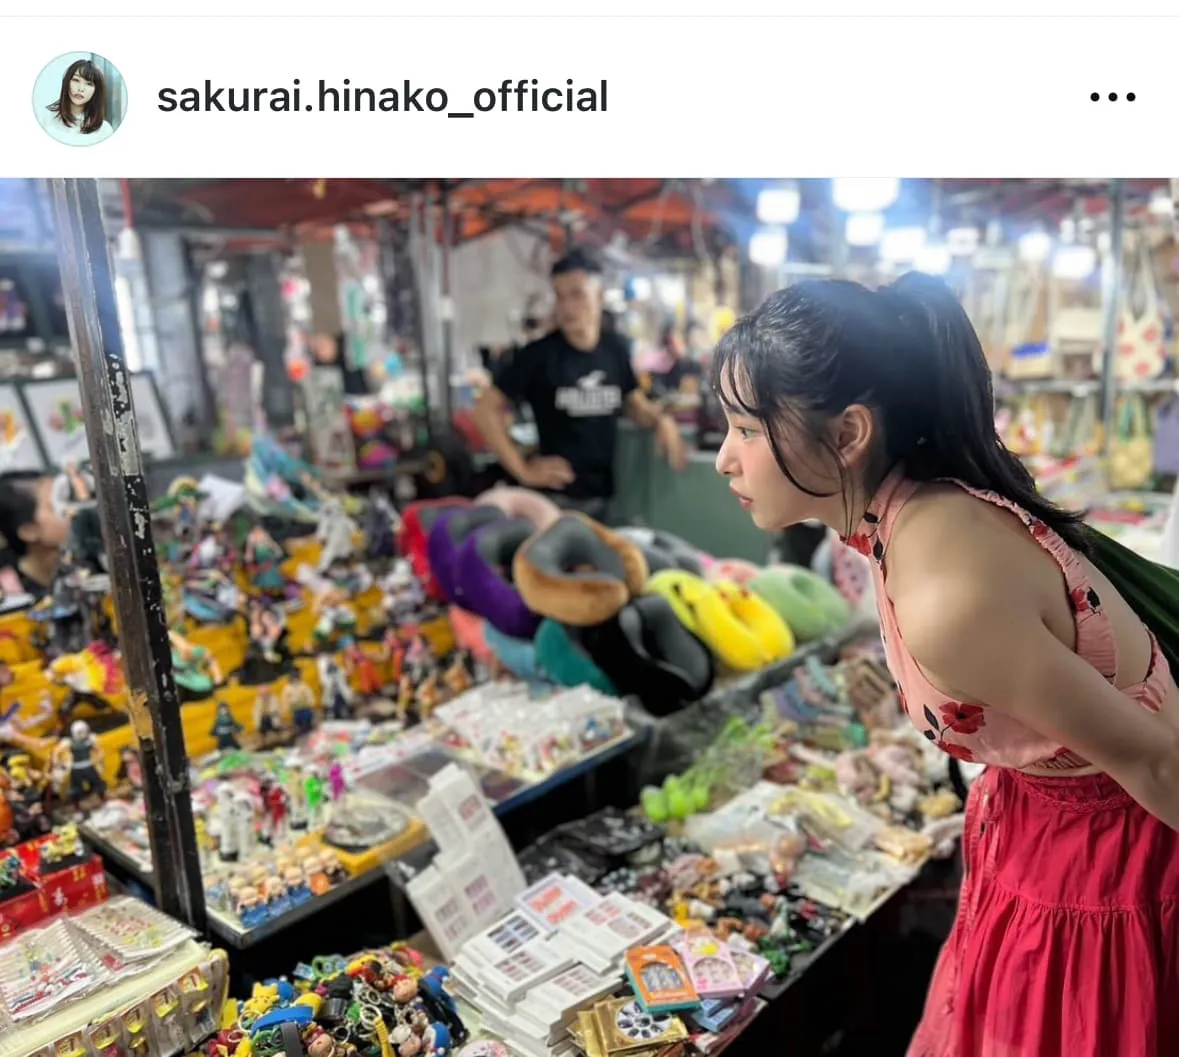 桜井日菜子Instagram(sakurai.hinako_official)より